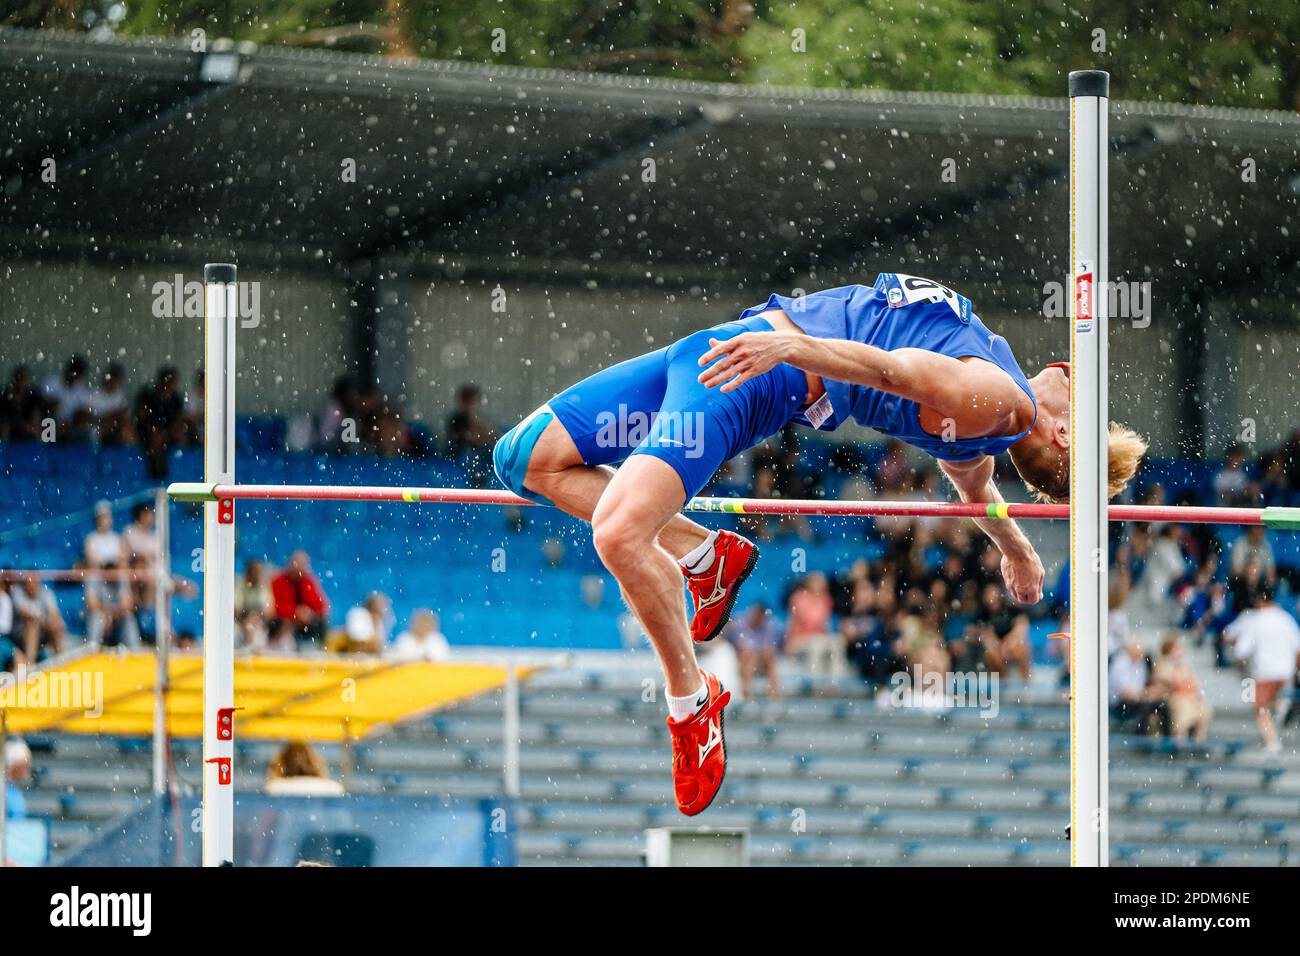 Homme athlète cavalier saut en hauteur sous la pluie, compétition d'athlétisme, Mizuno Spikes chaussures pour le saut, photos de sport Banque D'Images